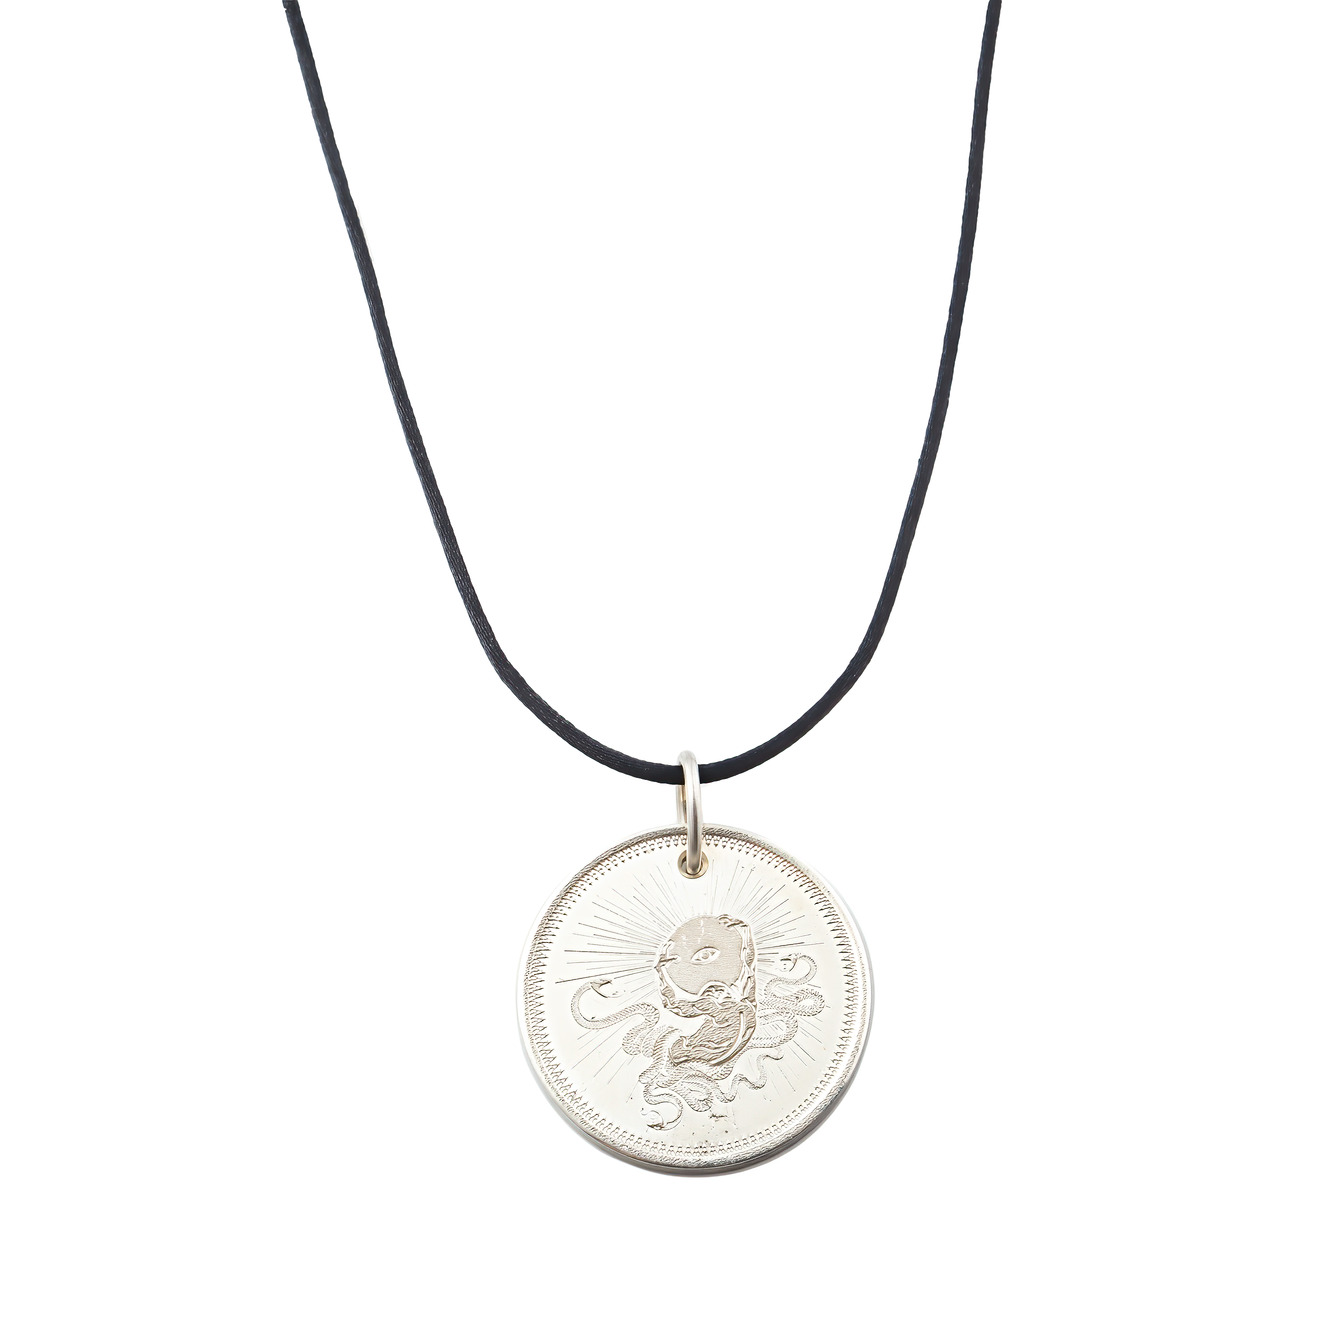 Agnes Waterhouse Подвеска-монета из серебра «Сила» маленькая монета кардано золотая монета ада посеребренная монета из физического металла крипто ада с пластиковым чехлом памятная монета для худож